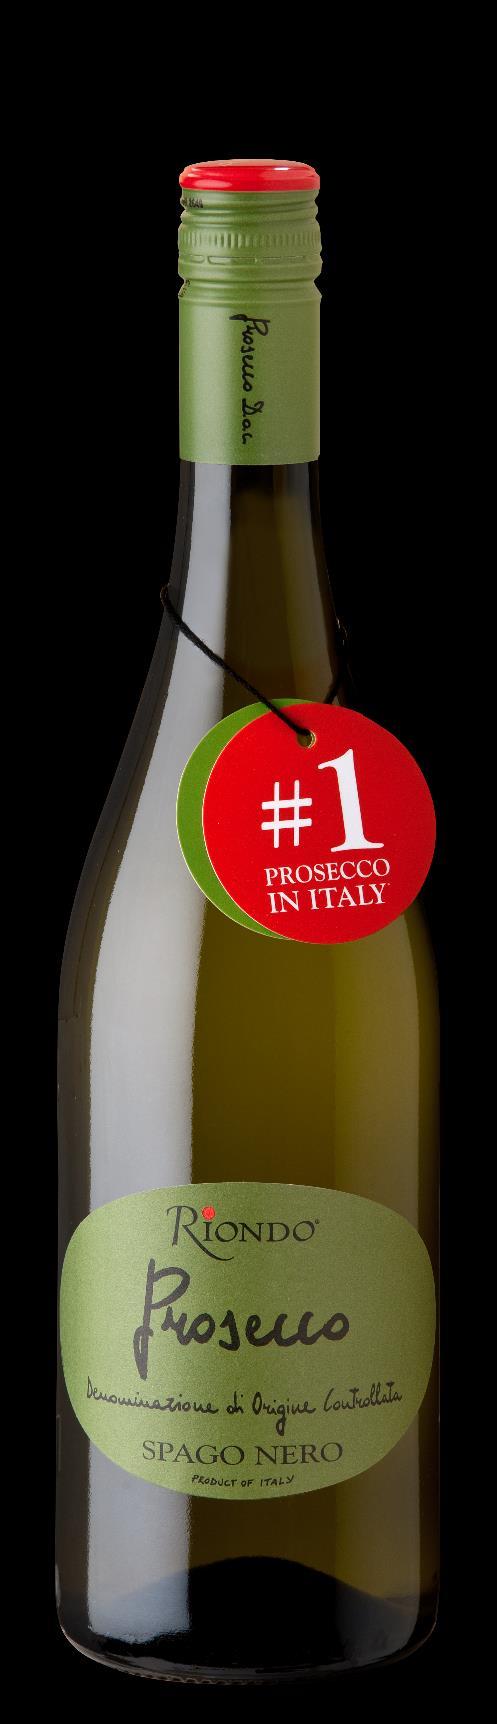 Green Label BVS Prosecco Frizzante White wine, Frizzante Prosecco D.O.C. Glera, other grapes 10,5% vol 20 g/liter 5.